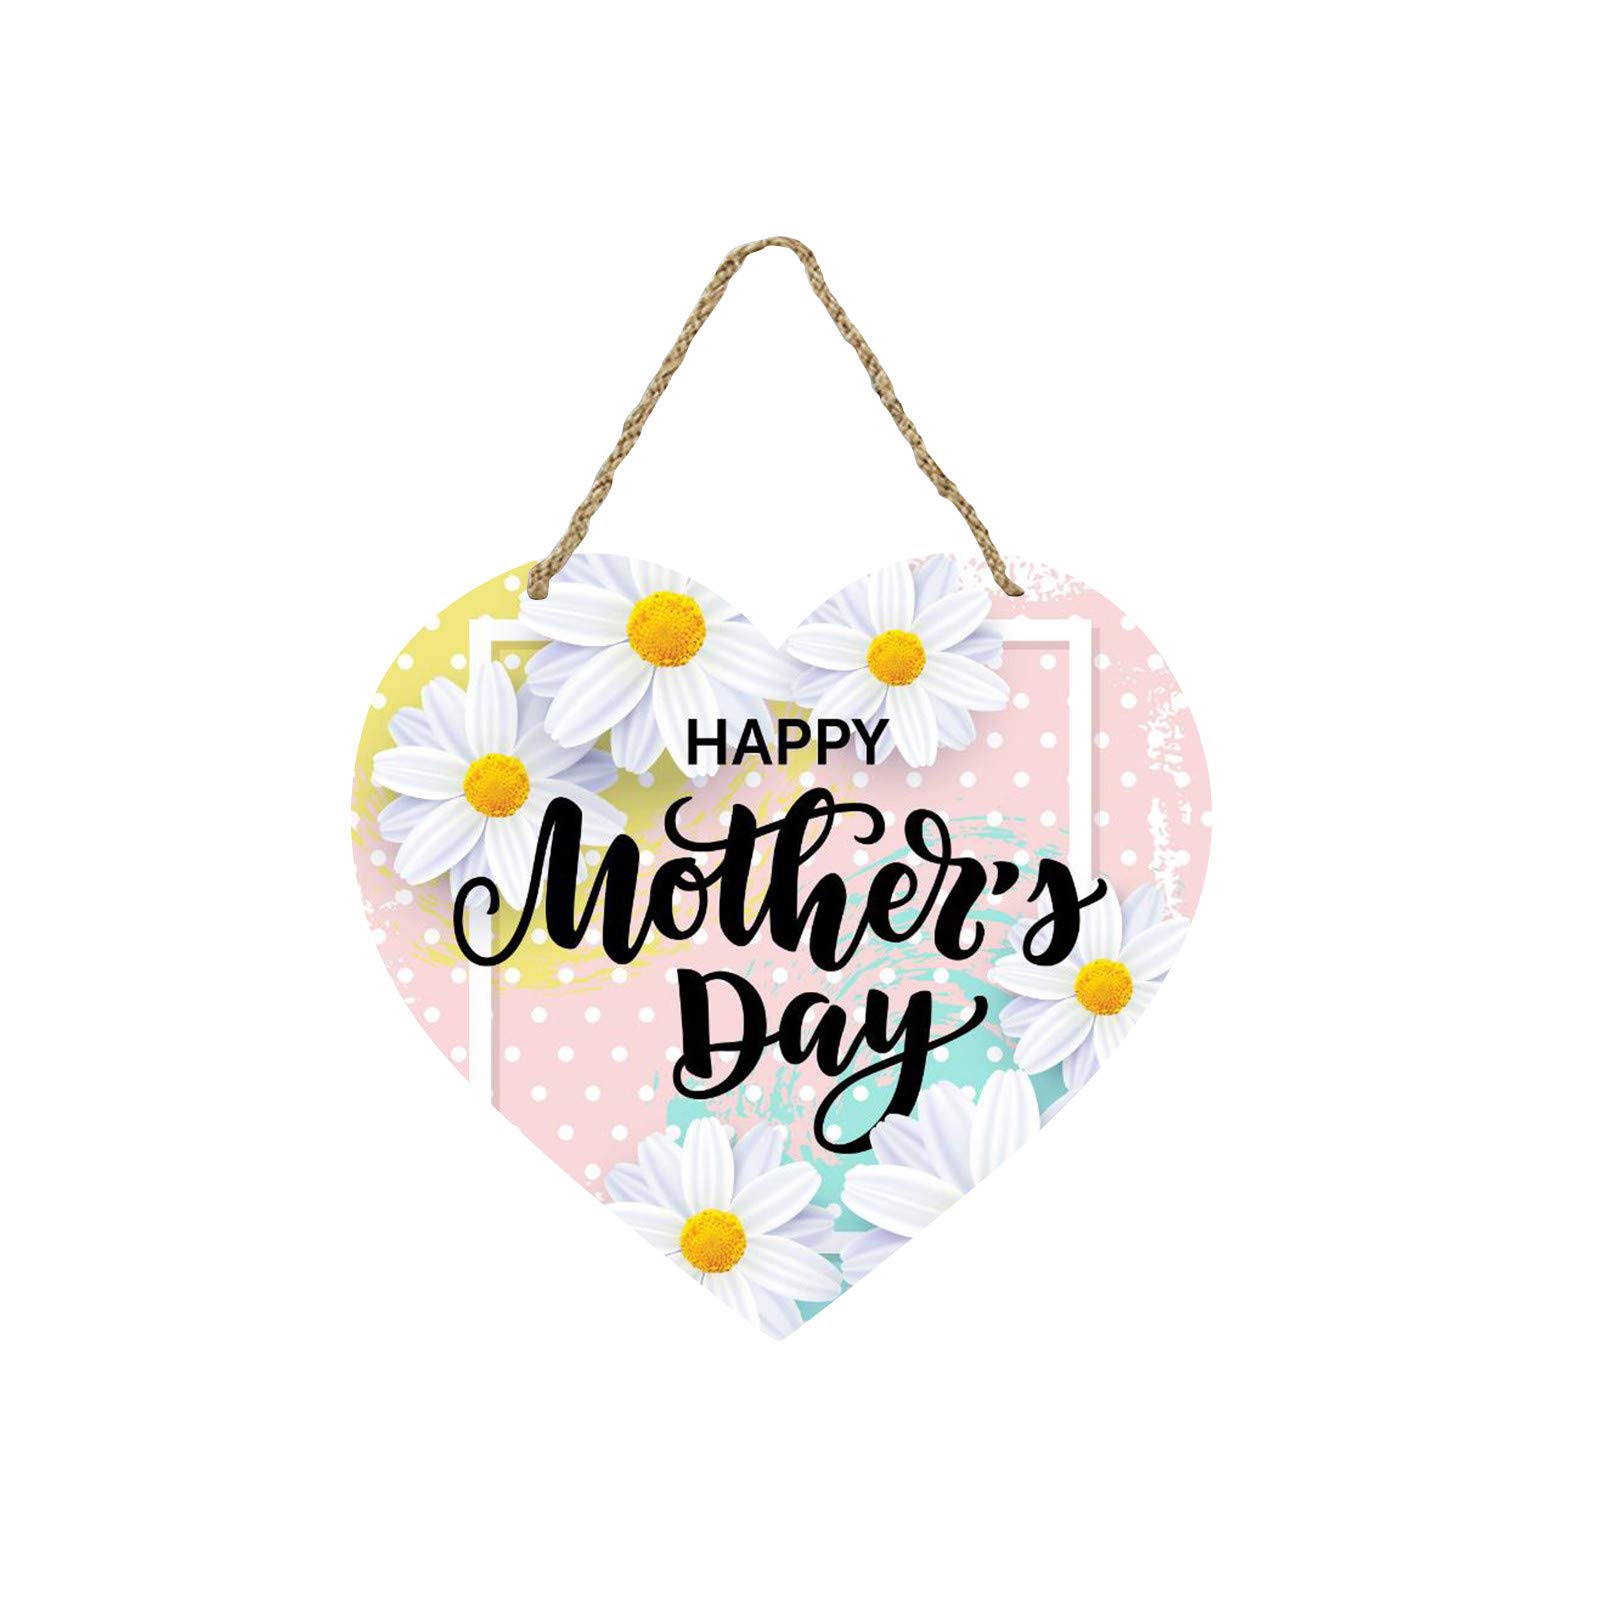 DIY Home Improvement: Creative Door Hanger Ideas For Mother’s Day